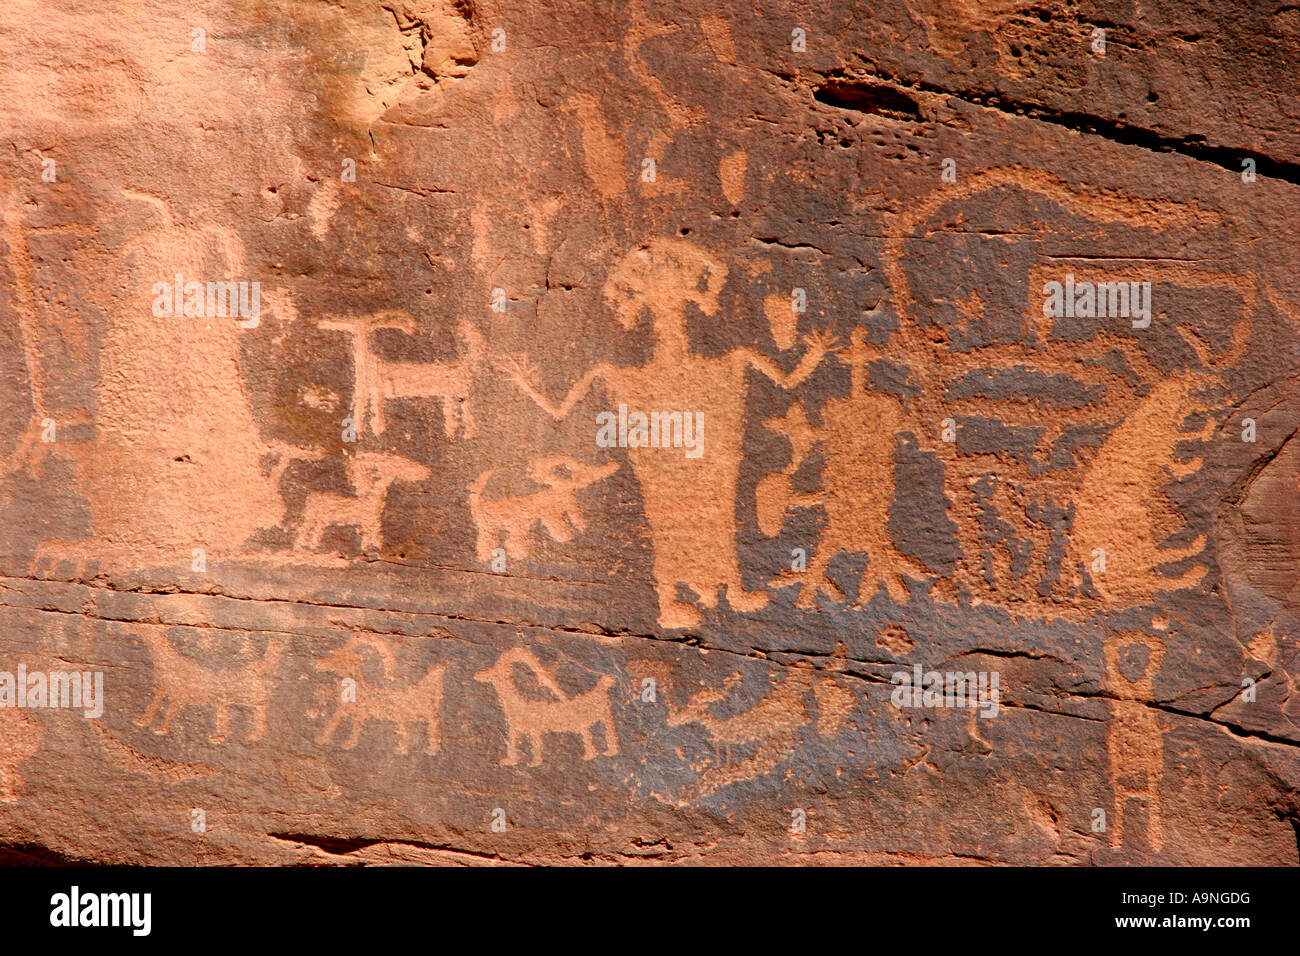 nine mile canyon petroglyphs, utah Stock Photo